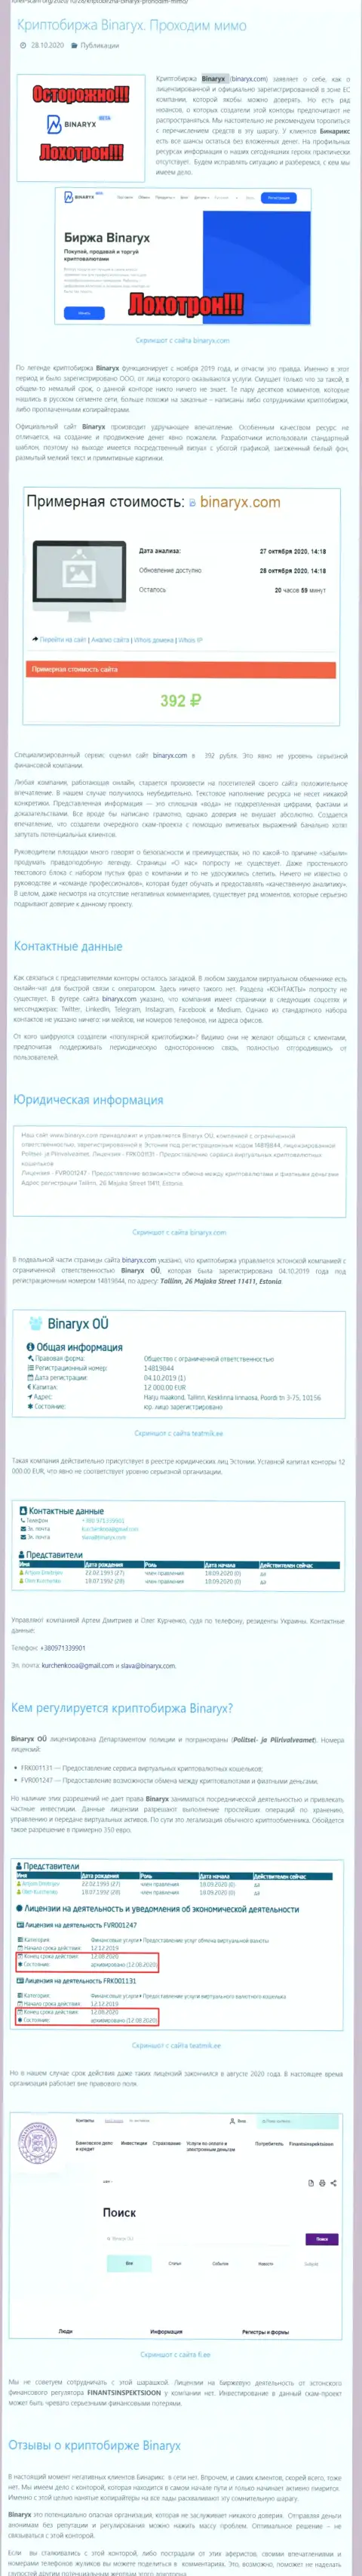 Binaryx Com - это ОБМАНЩИКИ !!! Слив финансовых средств гарантируют стопроцентно (обзор организации)